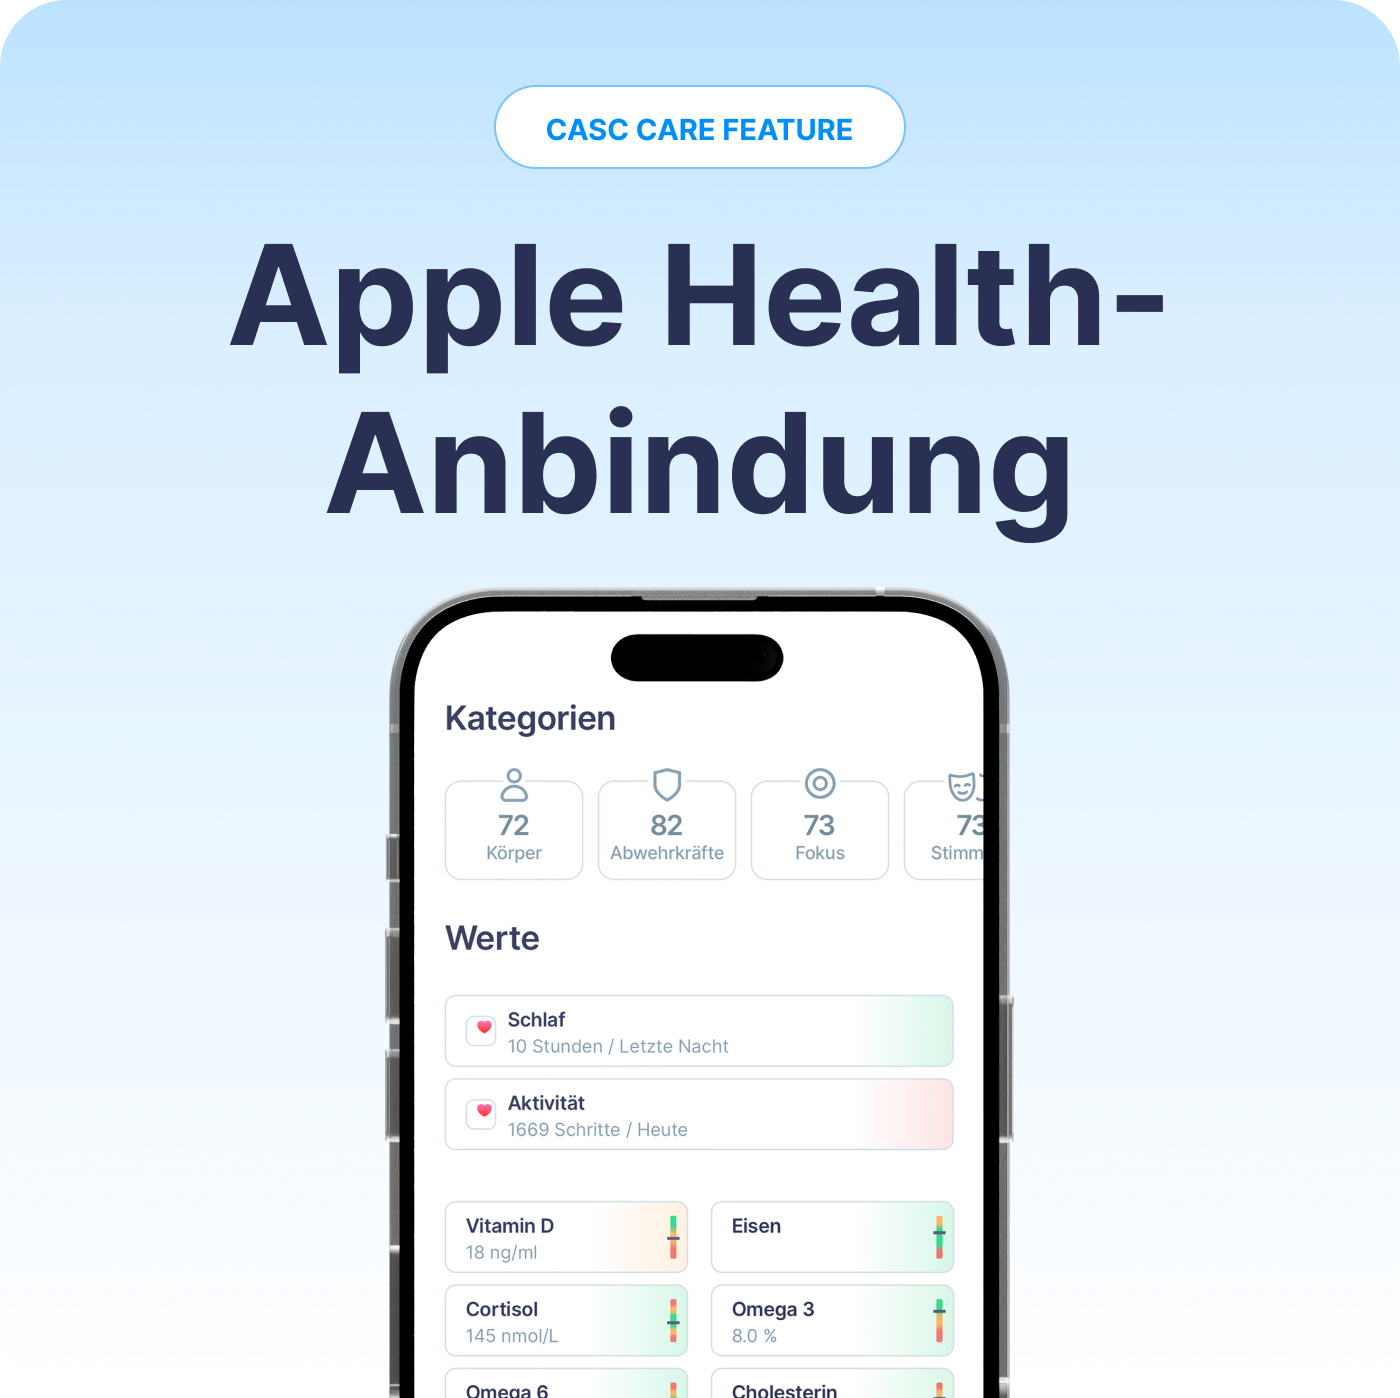 Das bringt die Anbindung von Apple Health Daten in der CASC App